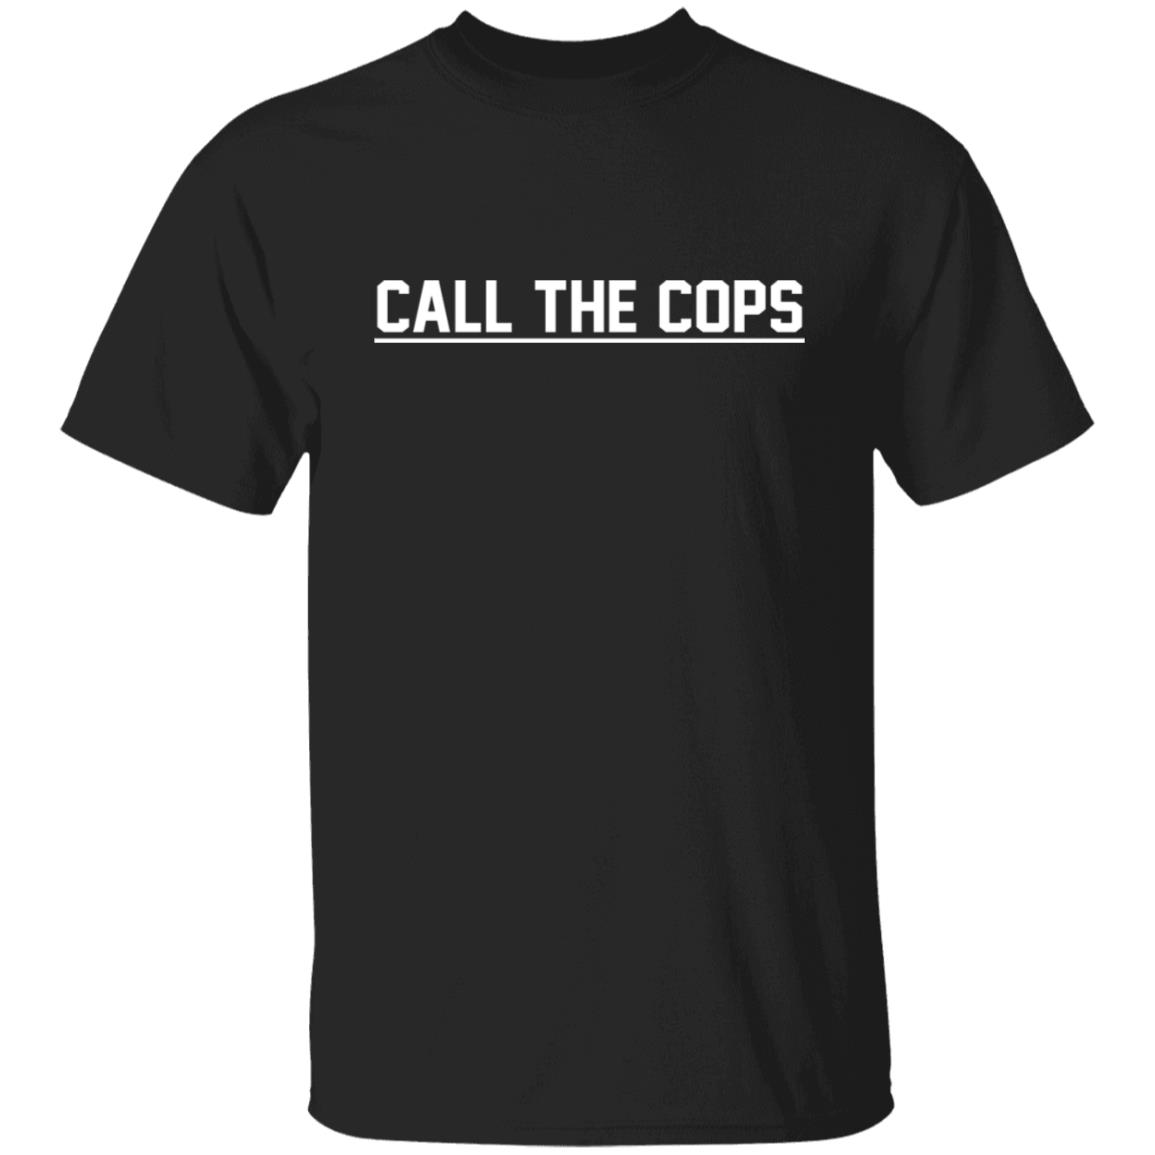 Call The Cops Shirt, T-Shirt, Hoodie, Tank Top, Sweatshirt